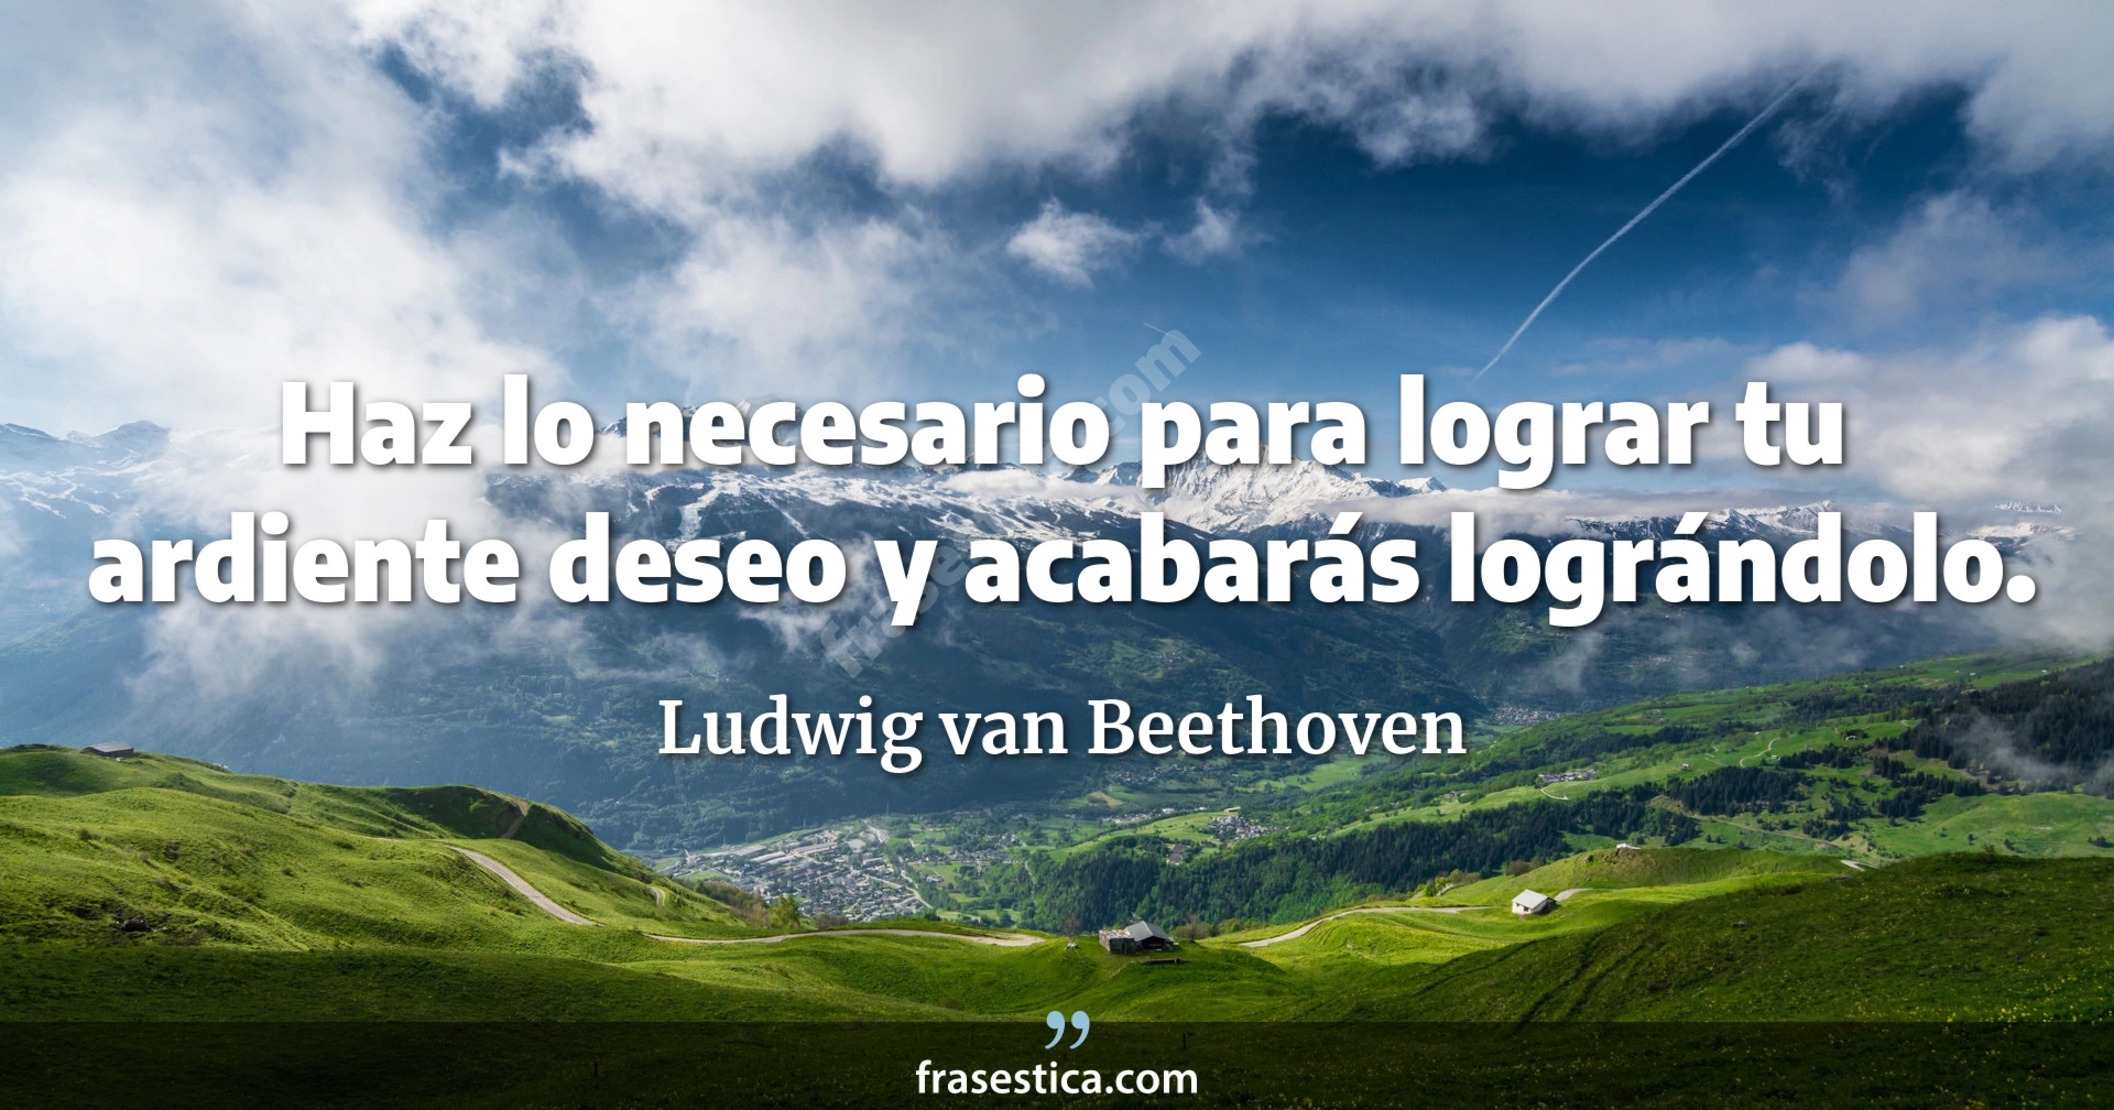 Haz lo necesario para lograr tu ardiente deseo y acabarás  lográndolo. - Ludwig van Beethoven